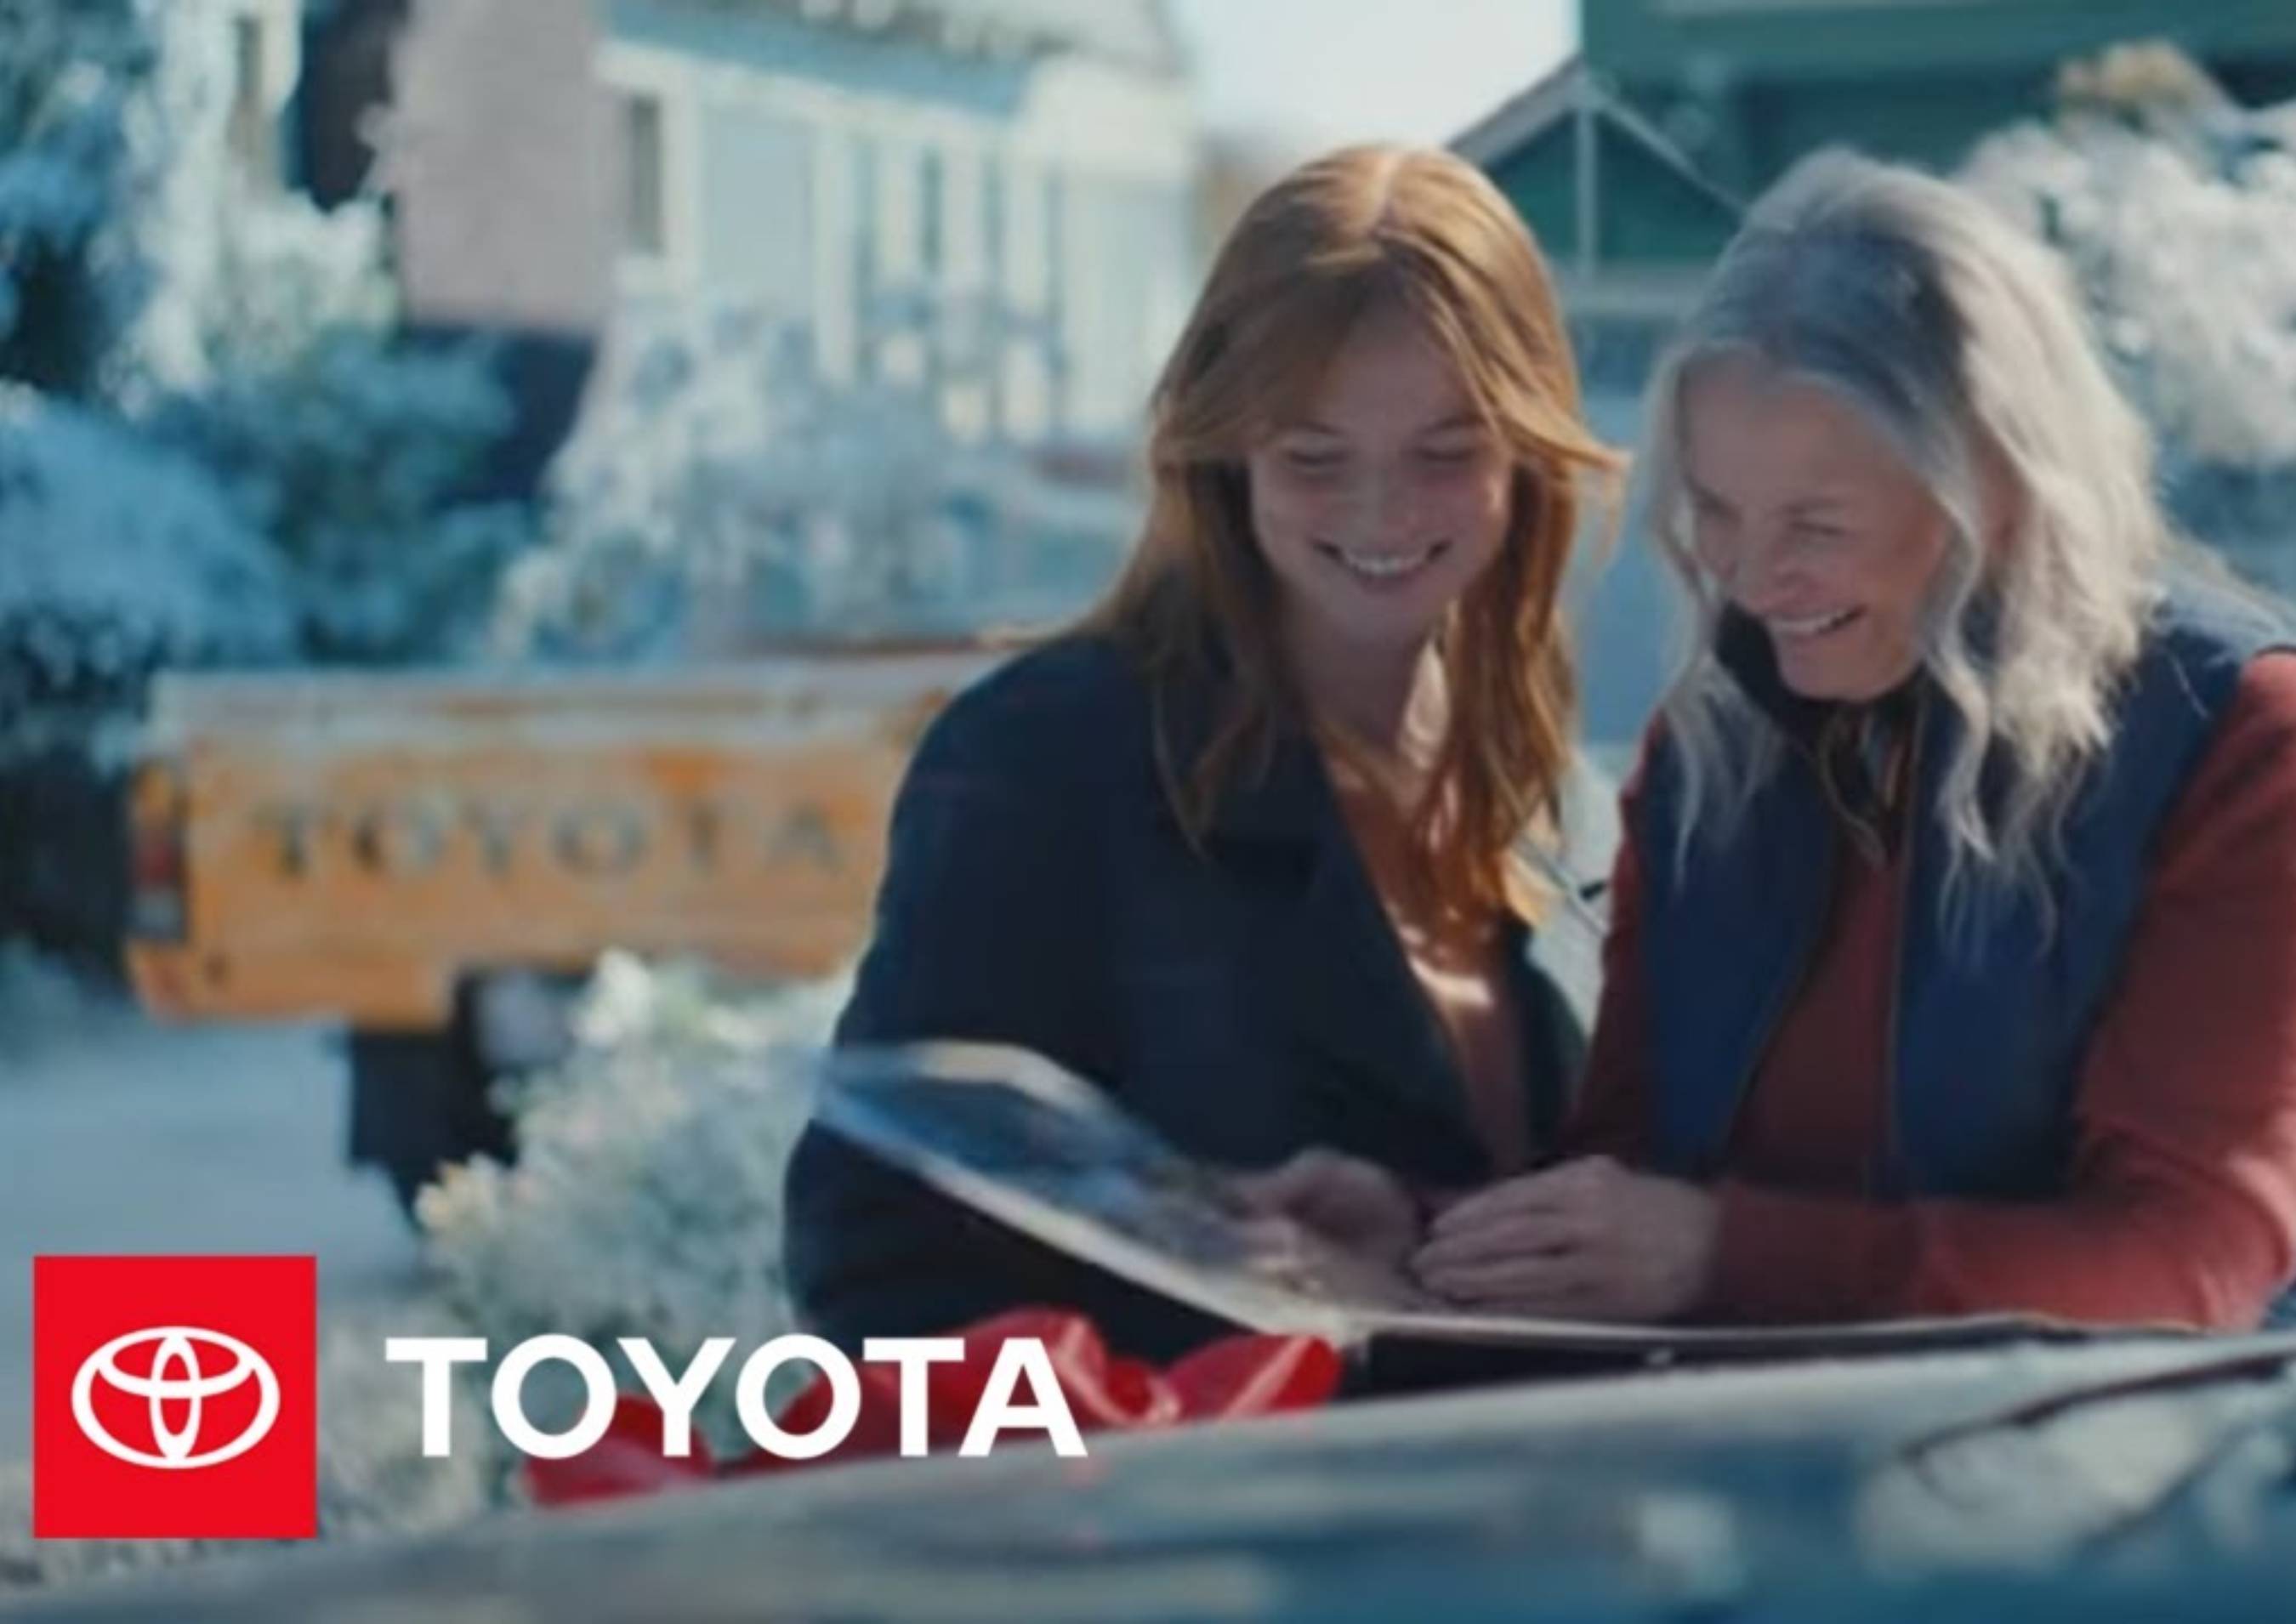 Toyota está celebrando la alegría de crear recuerdos con la familia durante la temporada navideña en el nuevo anuncio "Present from the Past", creado por Saatchi & Saatchi.